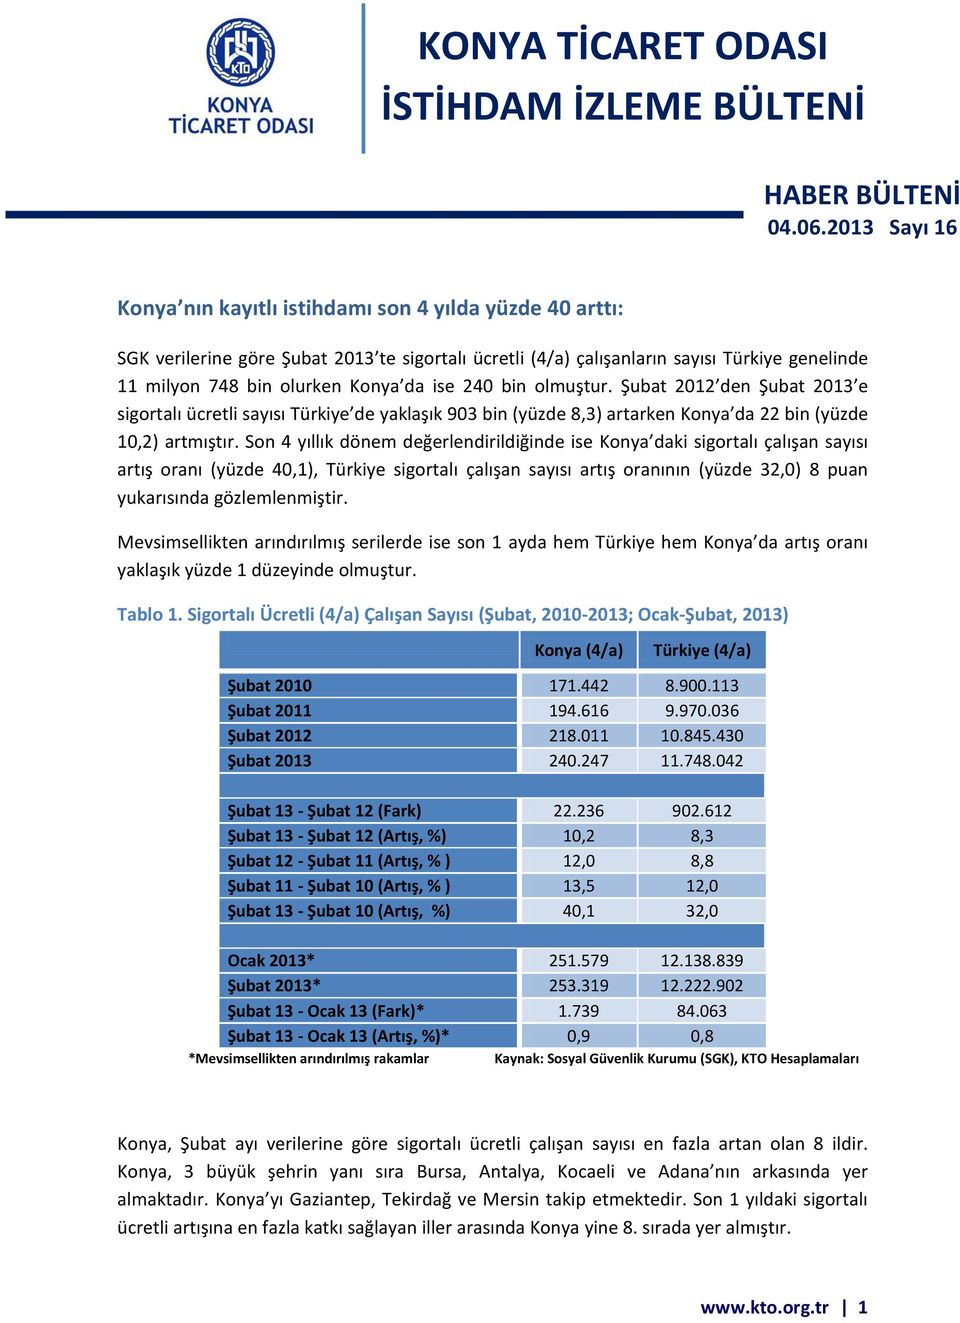 ise 240 bin olmuştur. Şubat 2012 den Şubat 2013 e sigortalı ücretli sayısı Türkiye de yaklaşık 903 bin (yüzde 8,3) artarken Konya da 22 bin (yüzde 10,2) artmıştır.